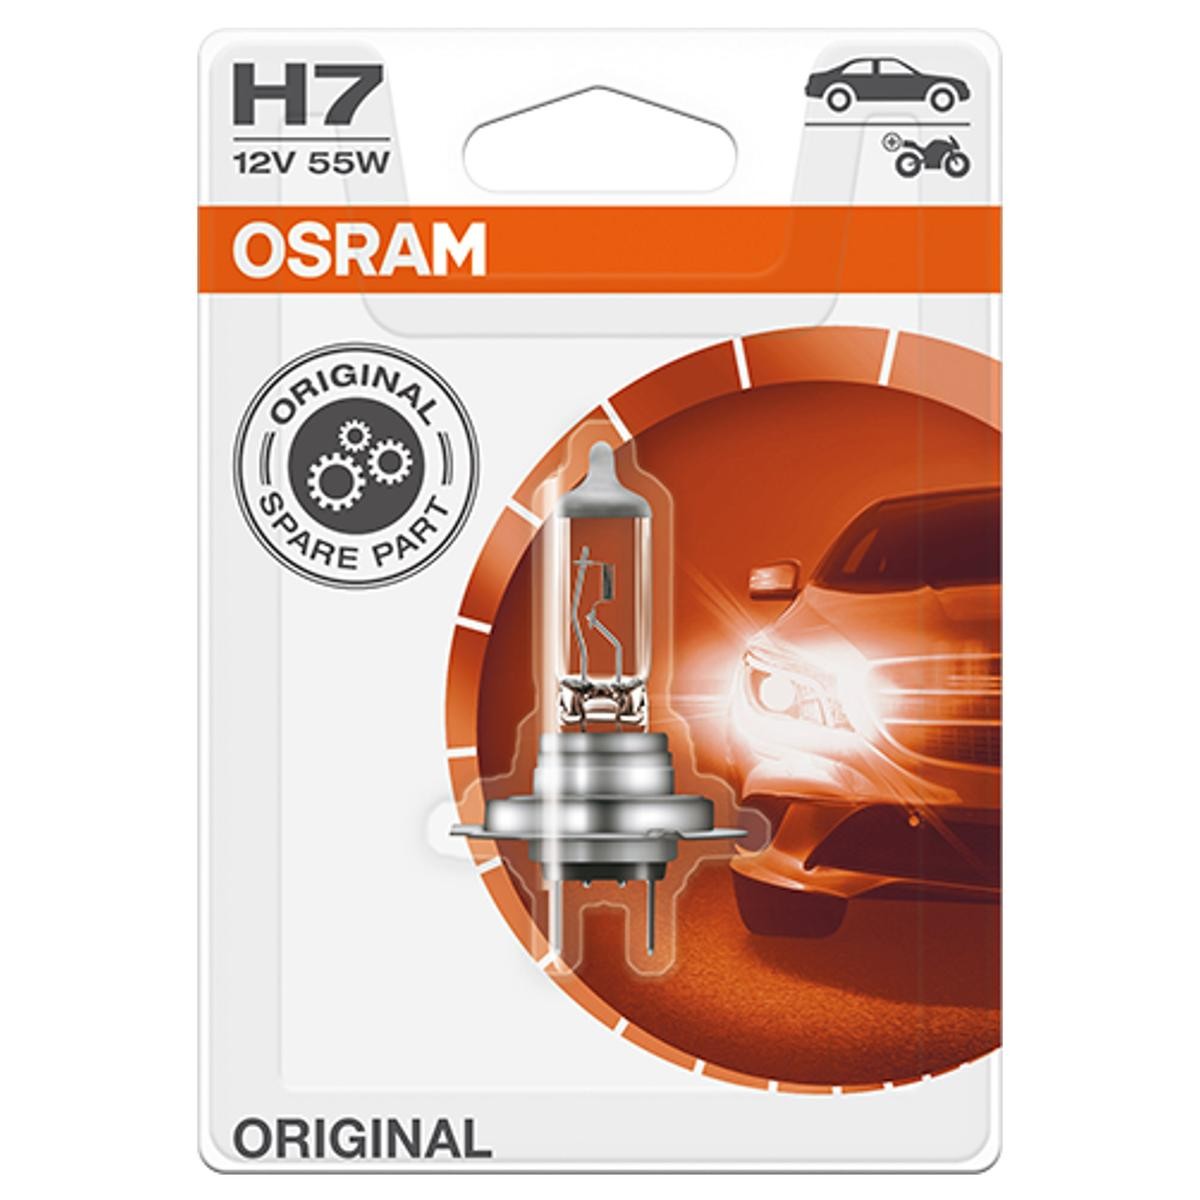 H7 OSRAM ORIGINAL H7 12V 55W PX26d 3200K Halogen Glühlampe, Fernscheinwerfer 64210-01B günstig kaufen